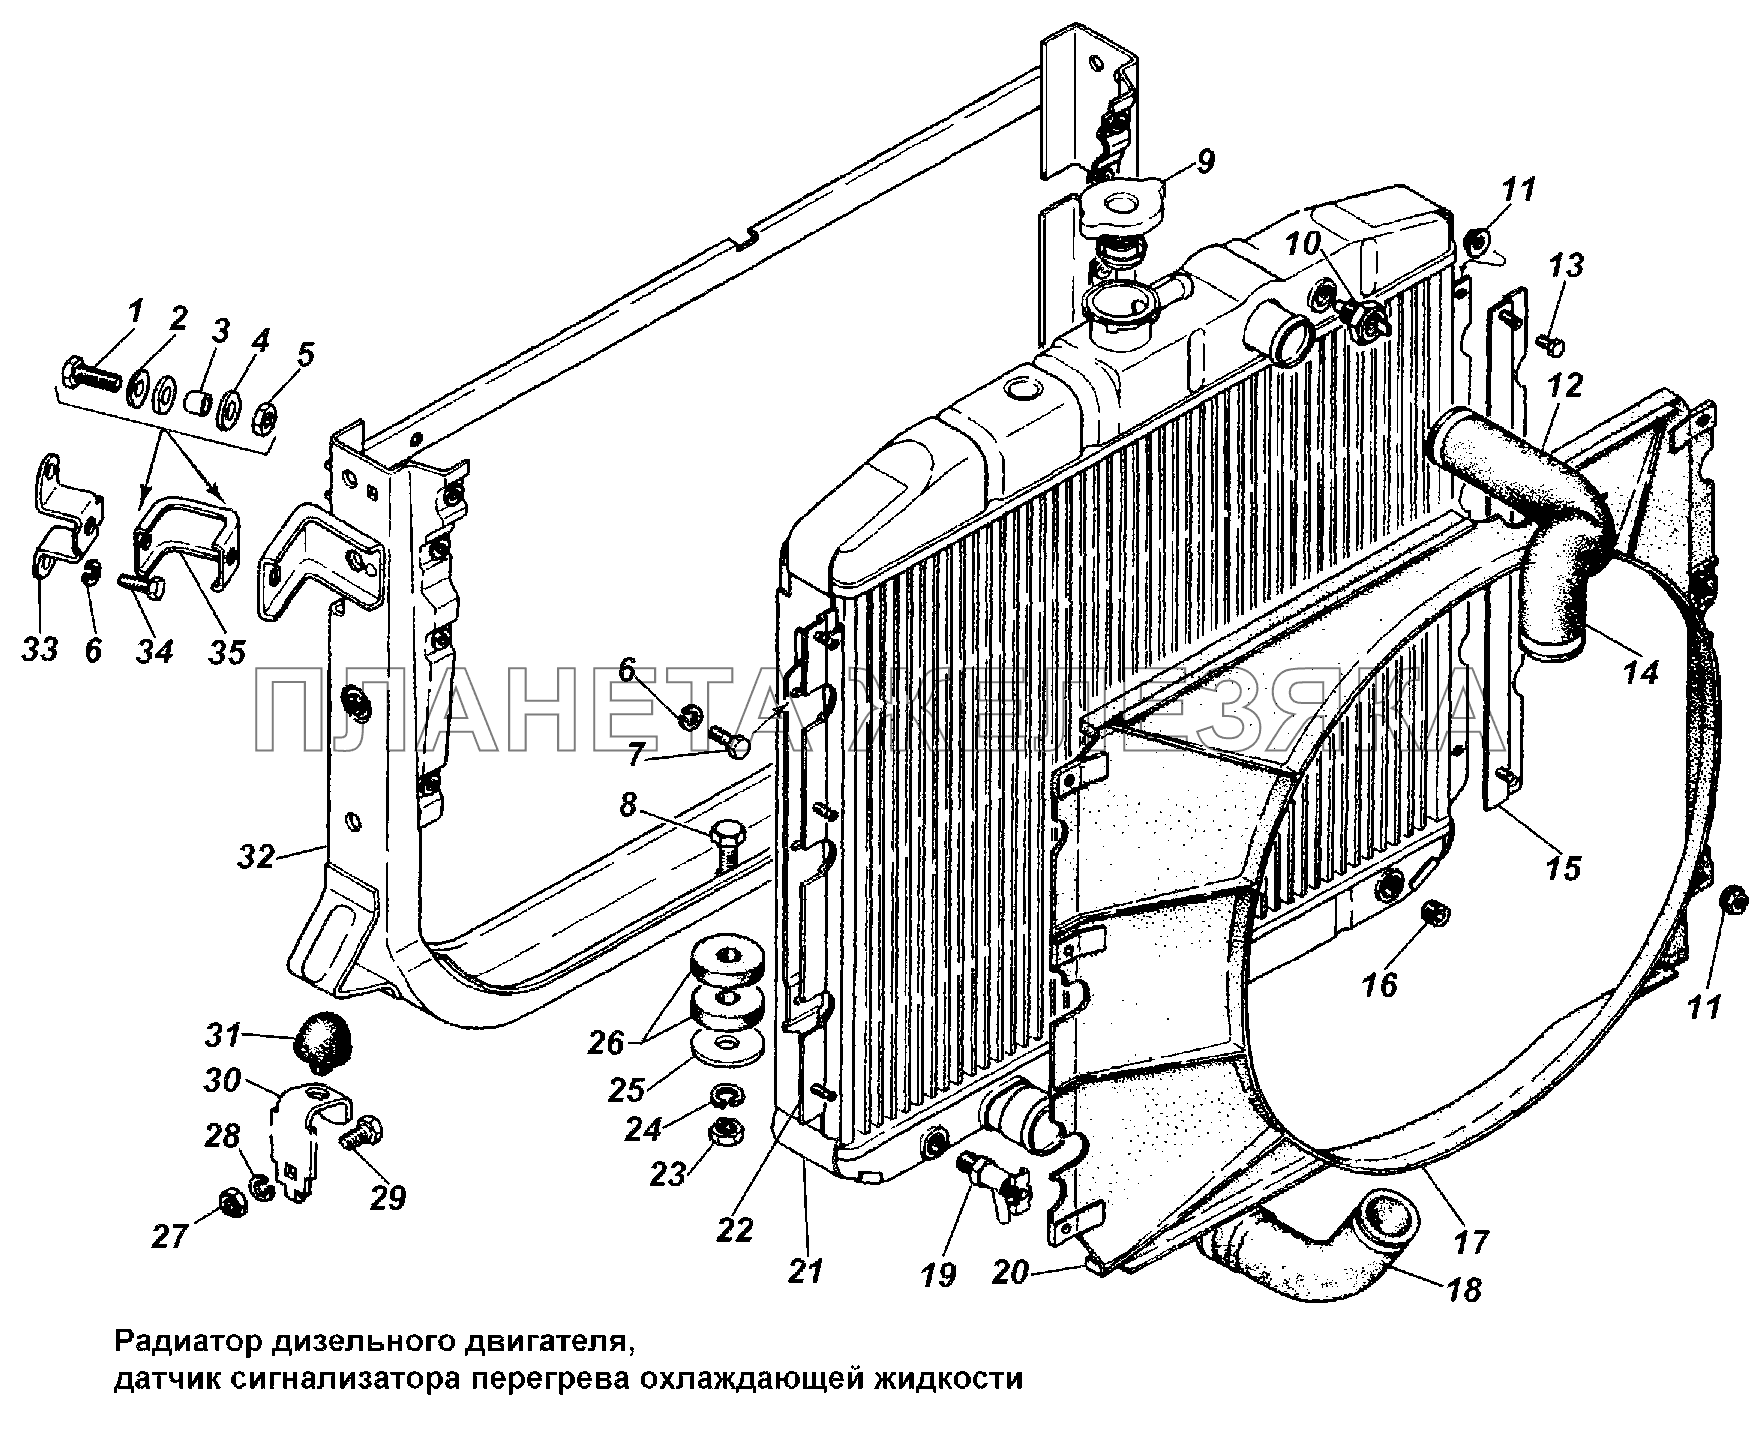 Радиатор дизельного двигателя ГАЗ-3308